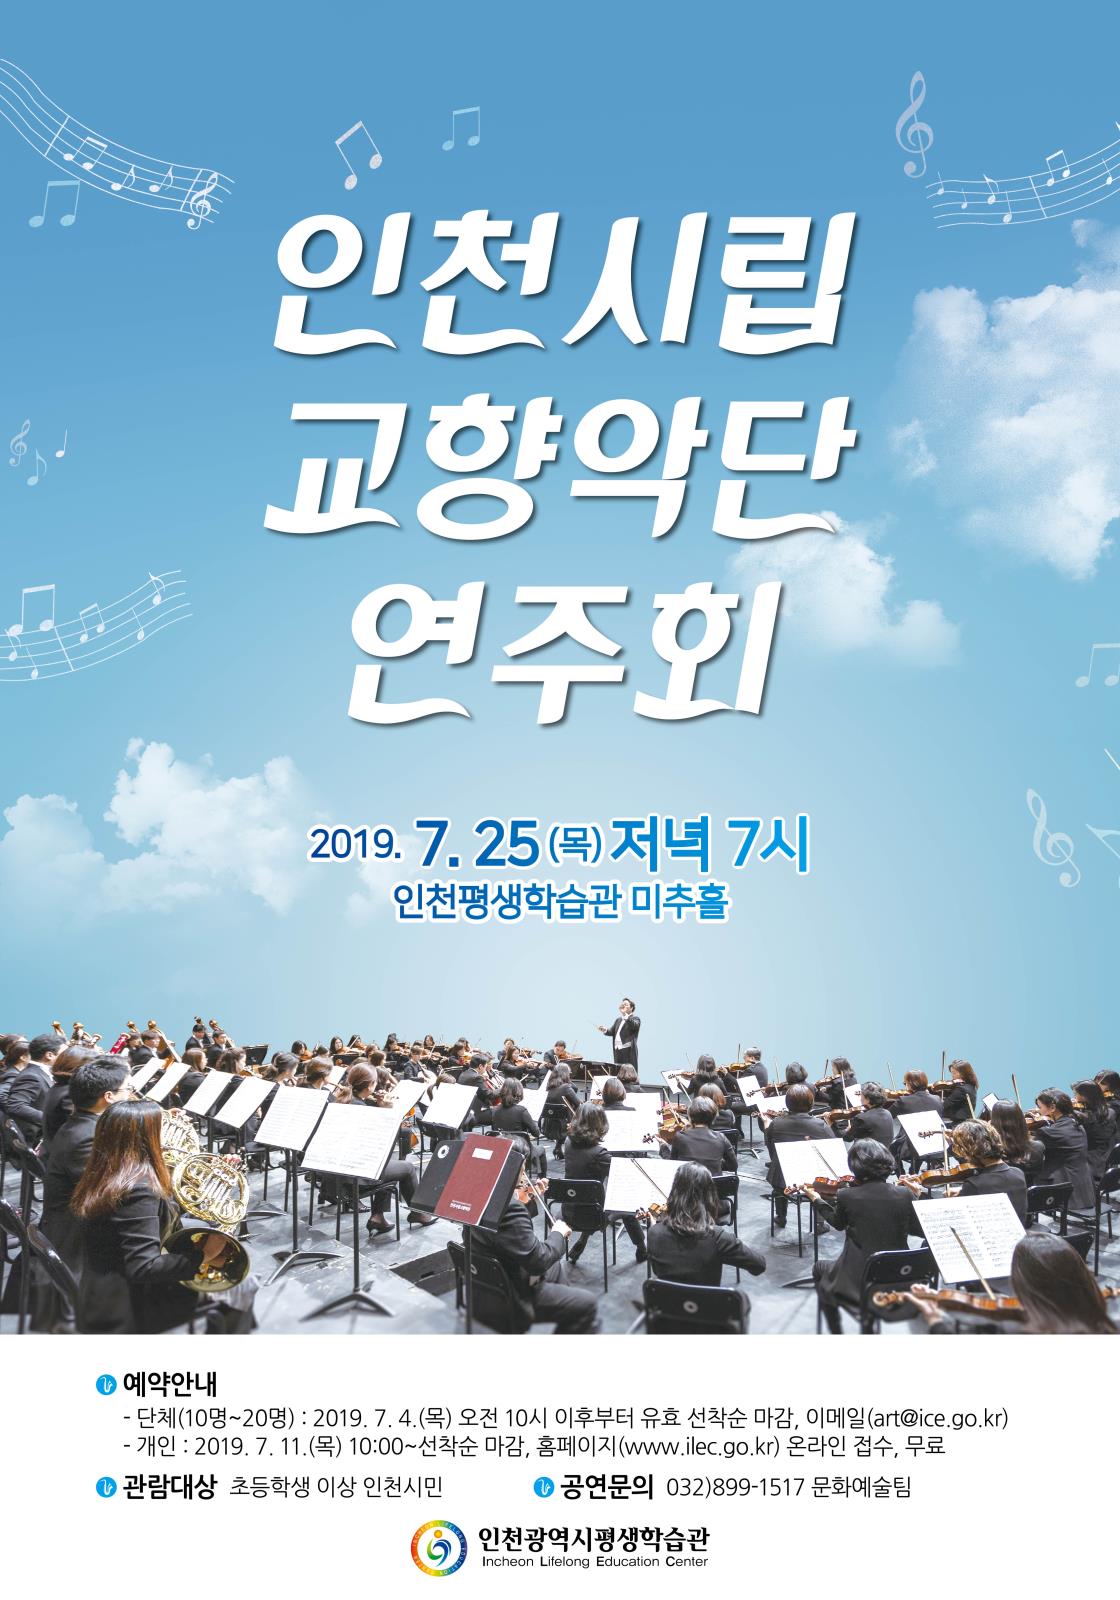 인천시립교향악단 연주회의 1번째 이미지